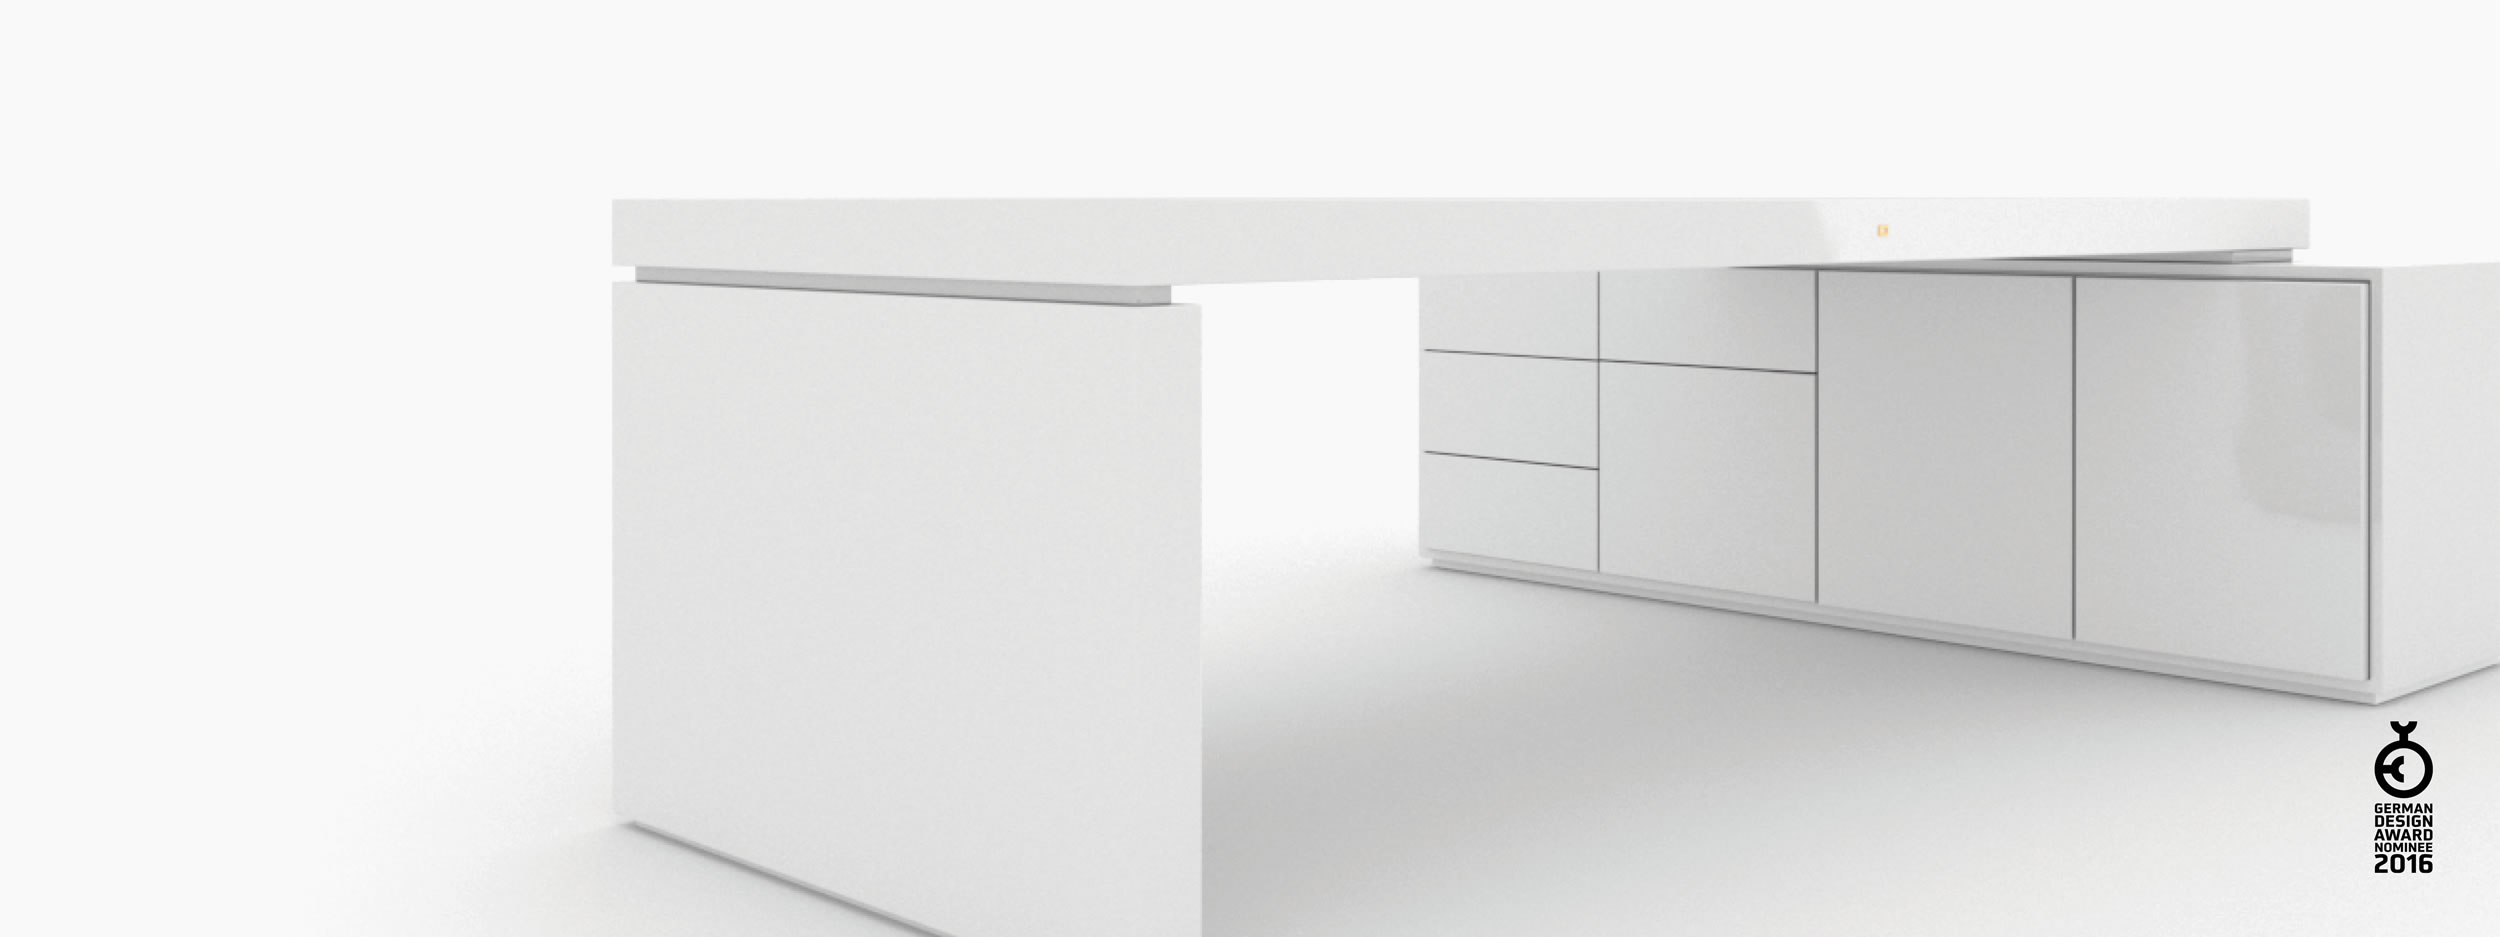 Schreibtisch scheiben und quader weiss all white Chefzimmer art furniture Schreibtische FS 94 FELIX SCHWAKE RECHTECK